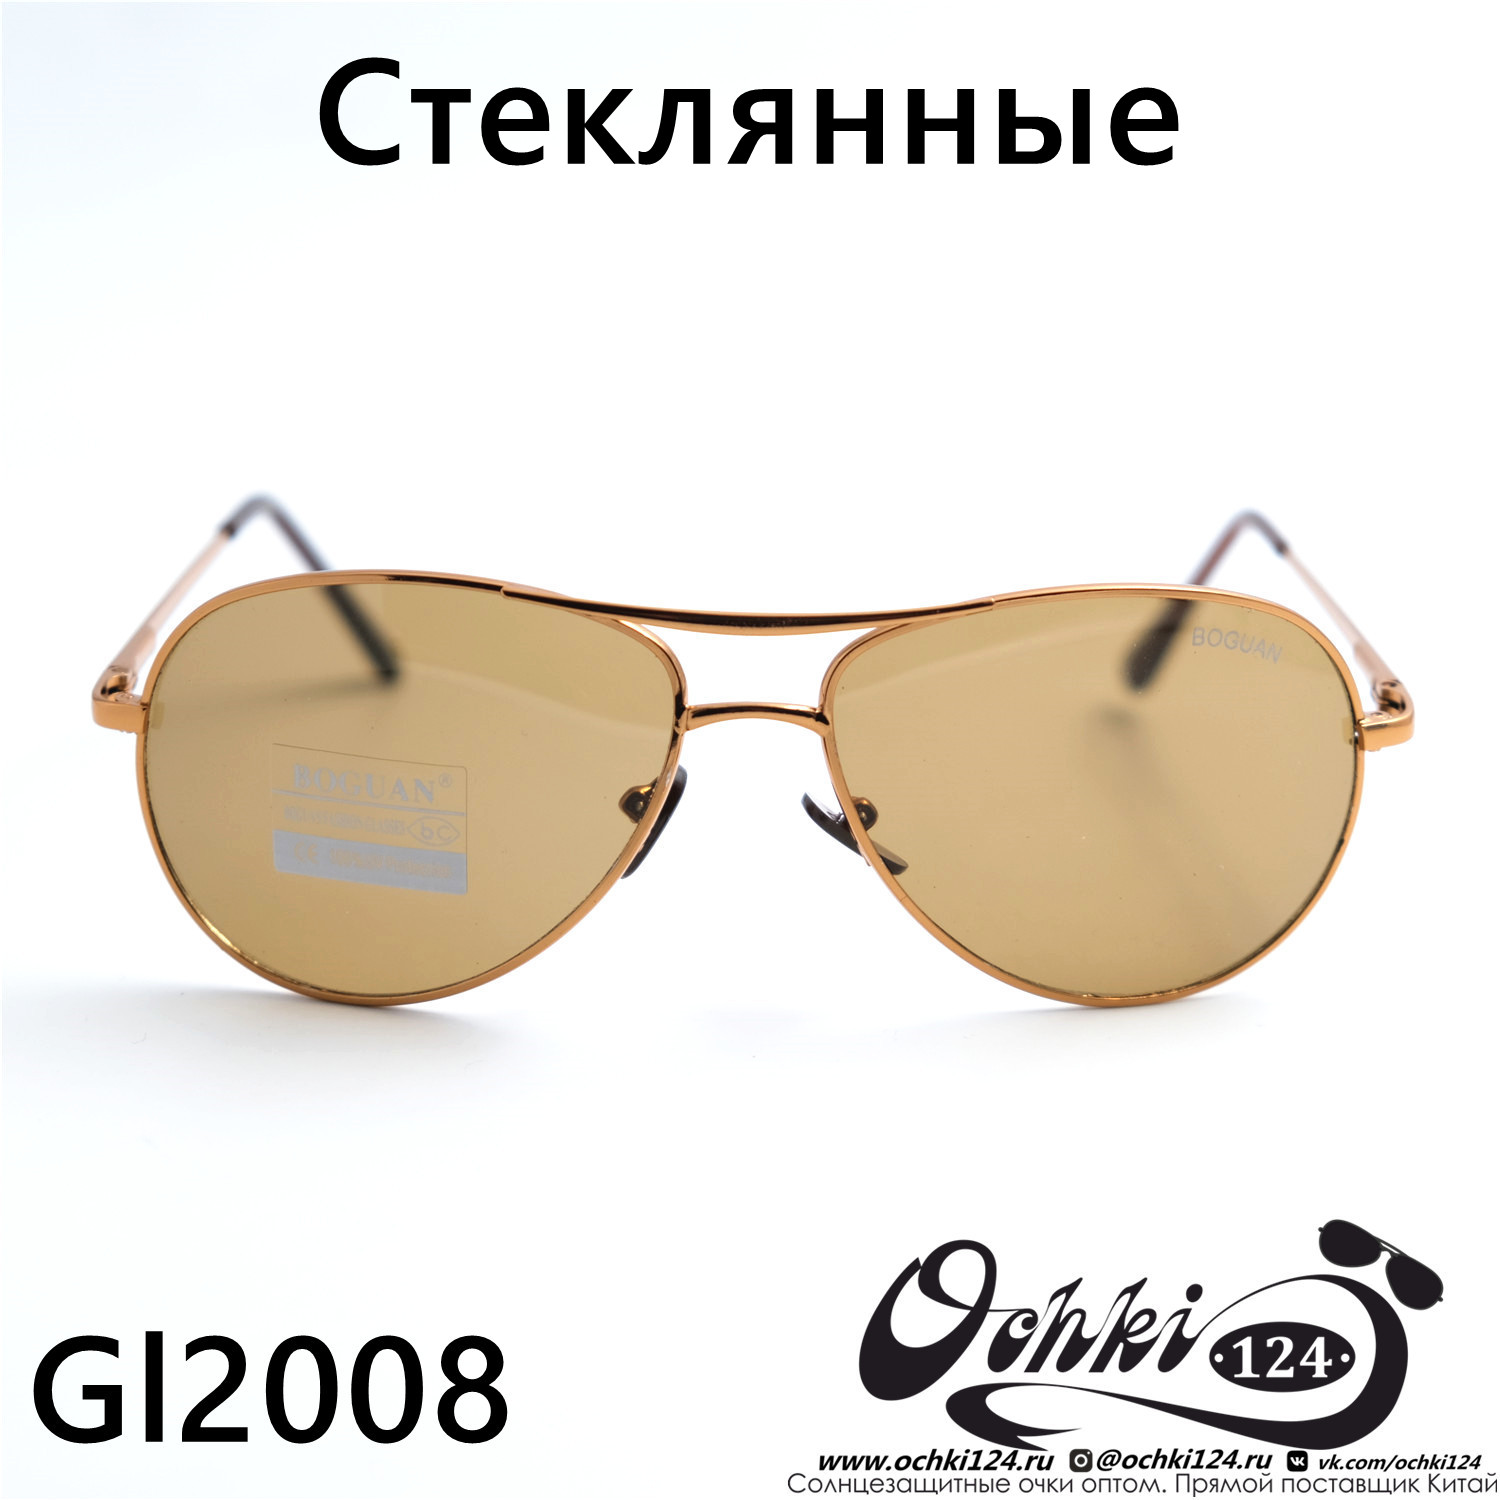  Солнцезащитные очки картинка 2023 Мужские Авиаторы Boguan 2008-C2 